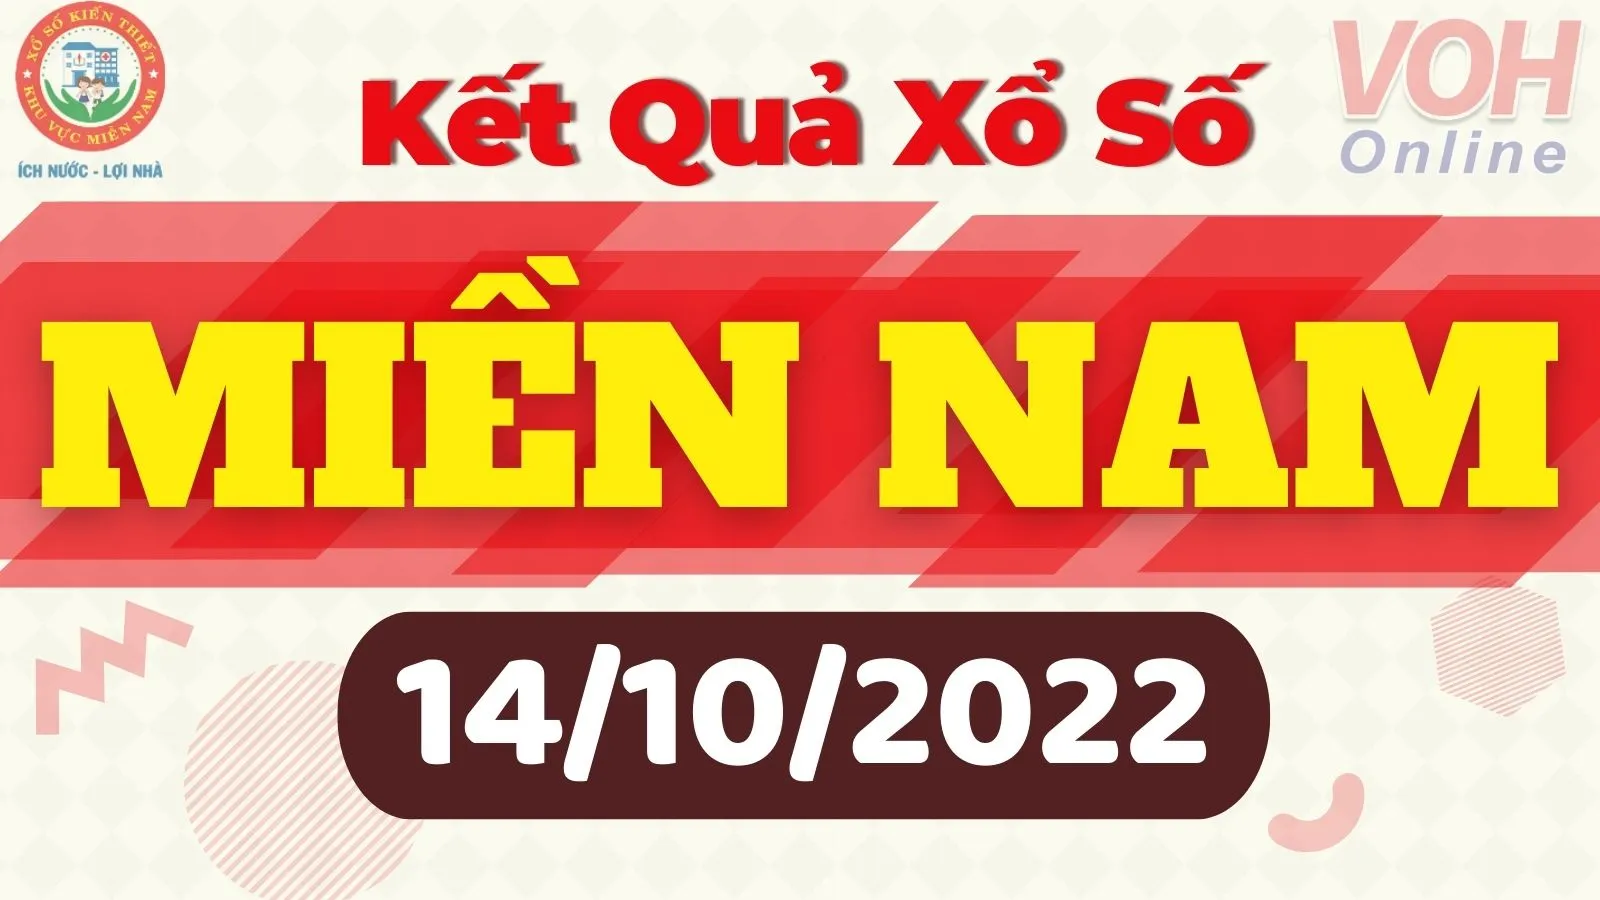 Xổ số miền Nam hôm nay - XSMN 14/10 - SXMN 14/10/2022 - Kết quả xổ số hôm nay ngày 14 tháng 10